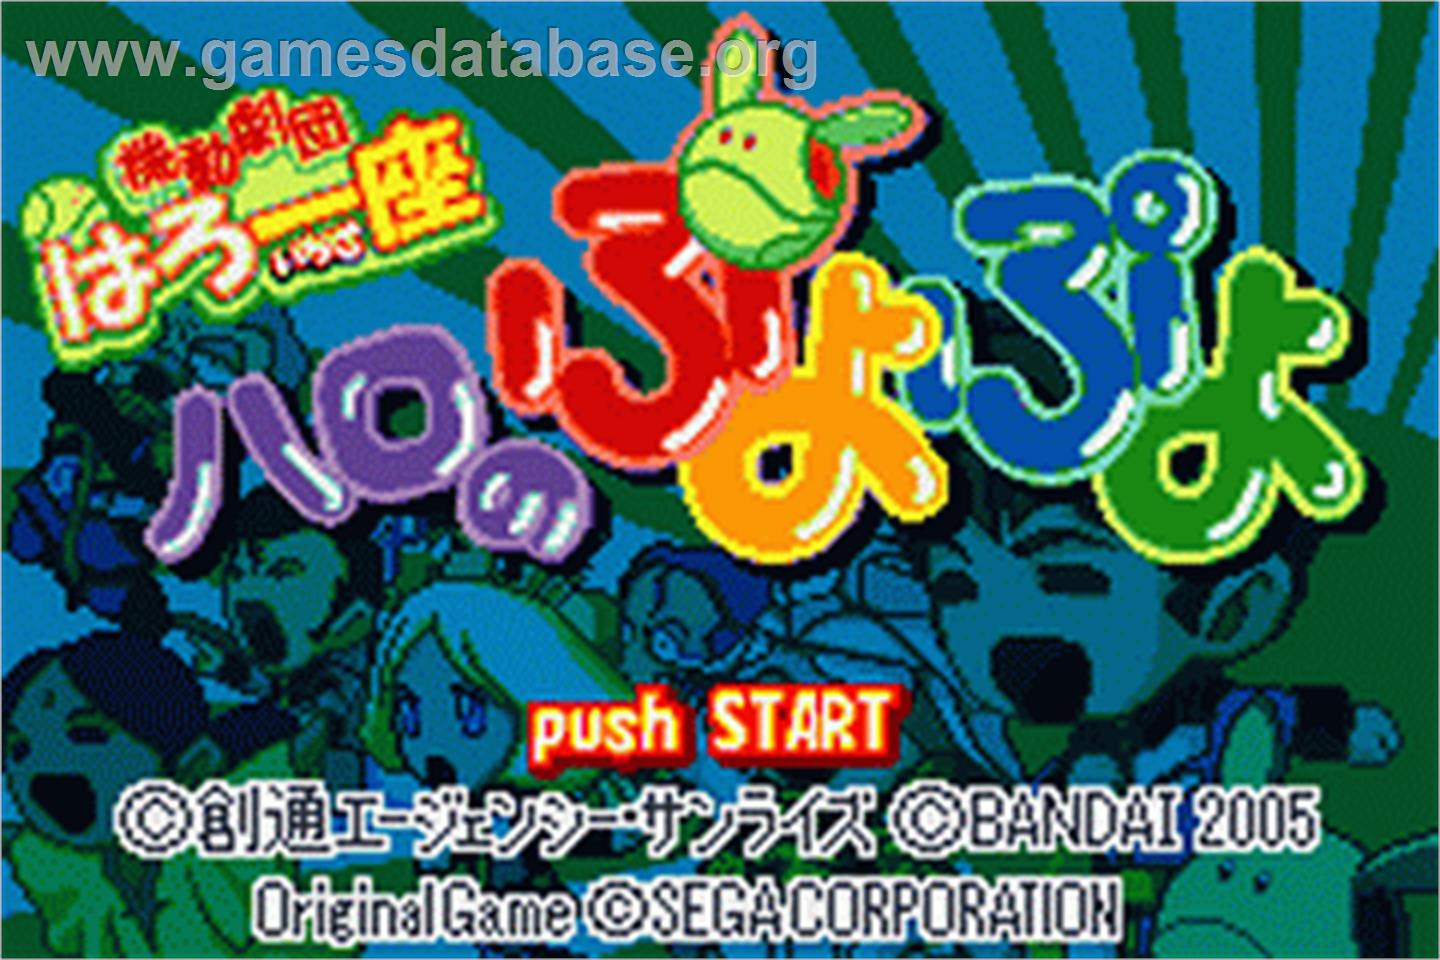 Kidou Gekidan Haro Ichiza: Haro no Puyo Puyo - Nintendo Game Boy Advance - Artwork - Title Screen